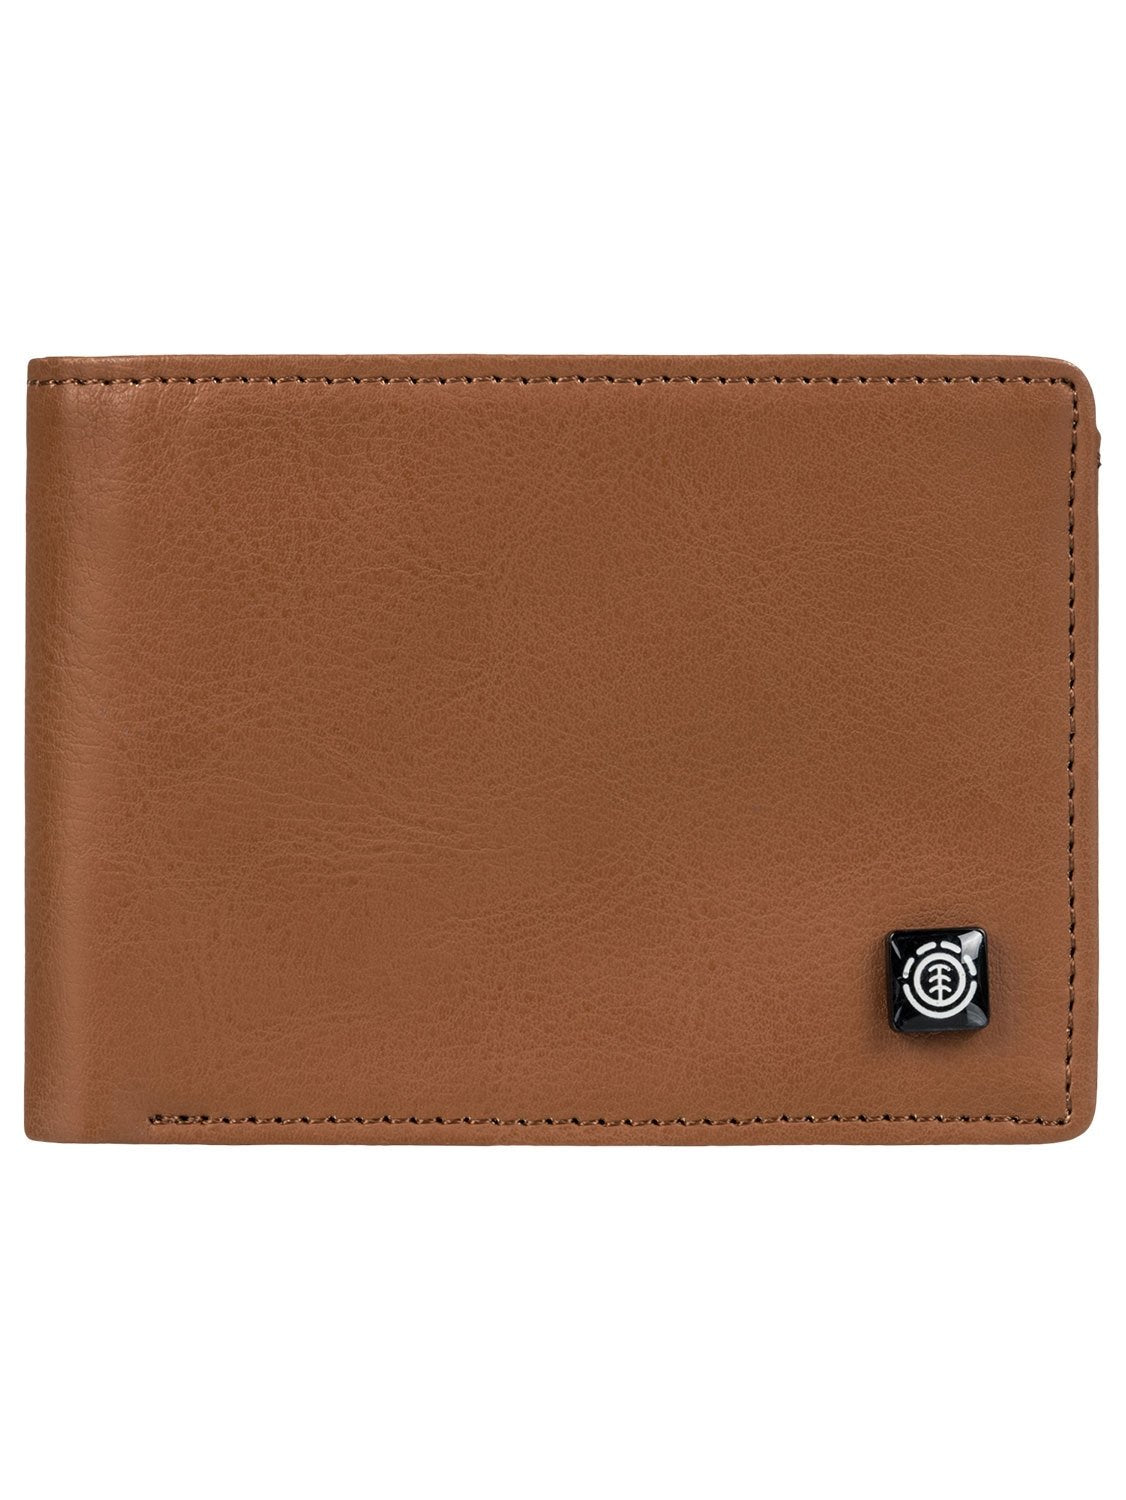 Element Men's Segur Leather Wallet